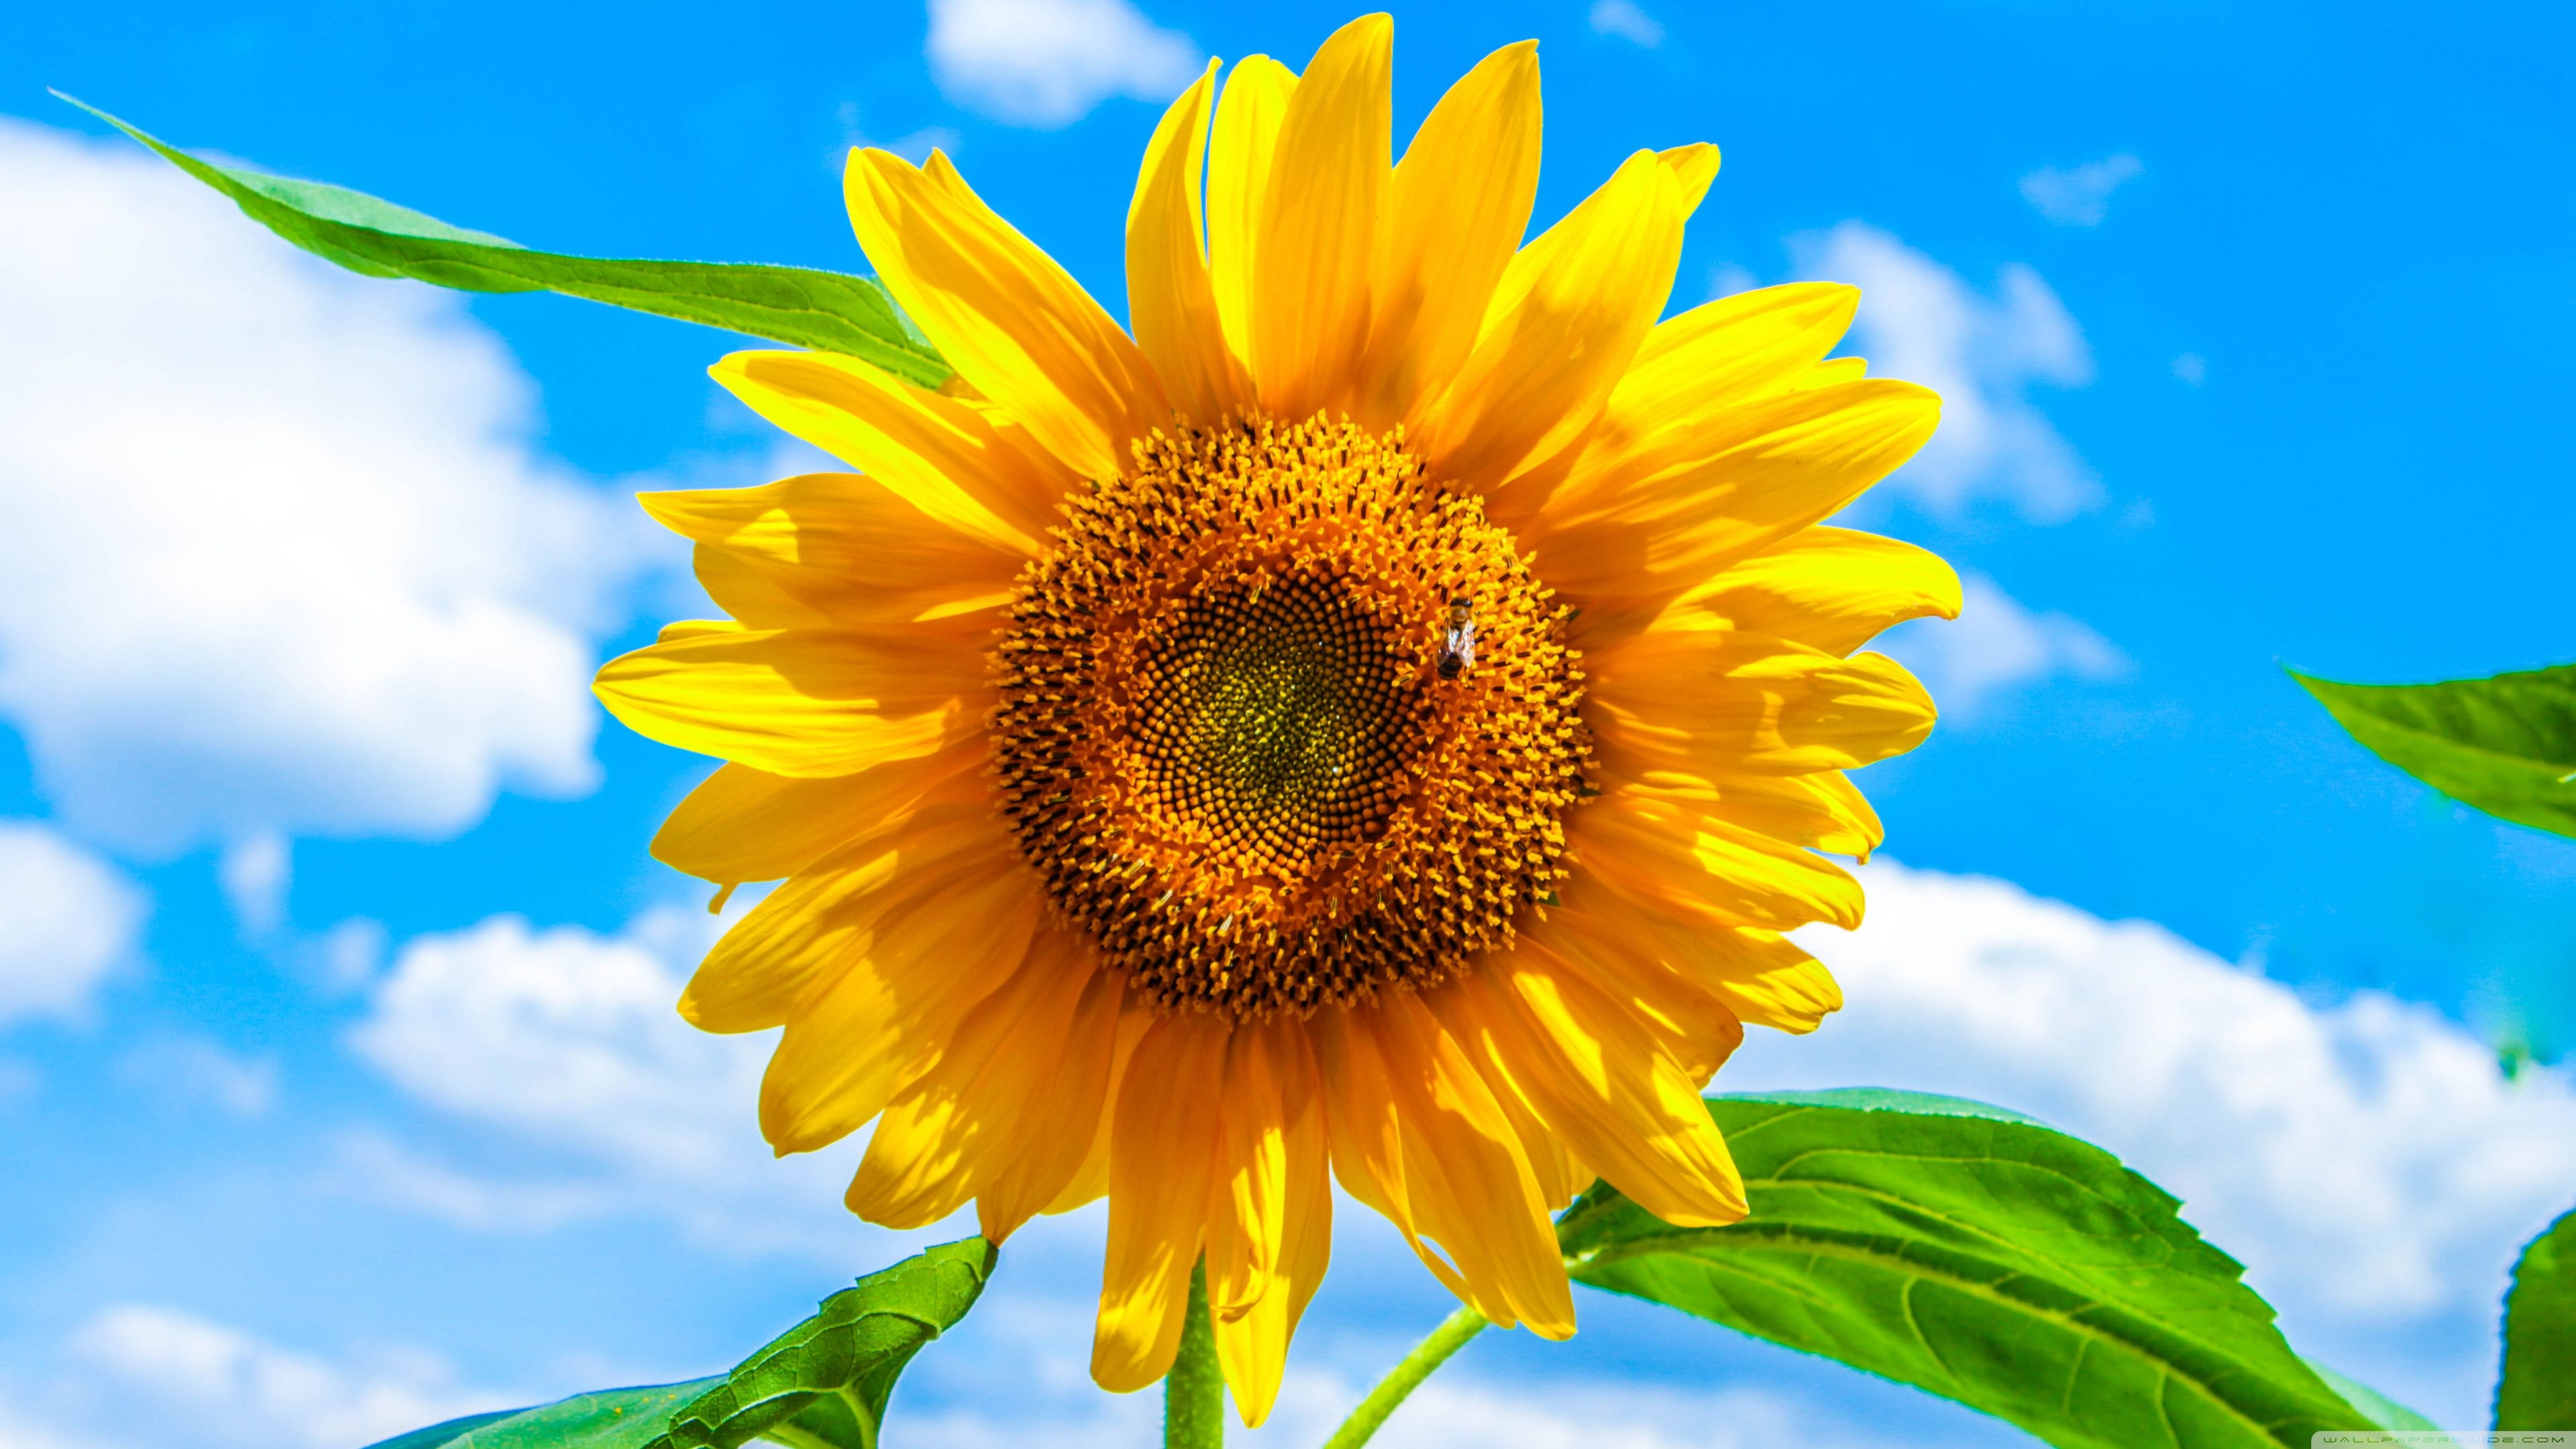 Sunflower Ultra HD Desktop Background Wallpaper for 4K UHD TV